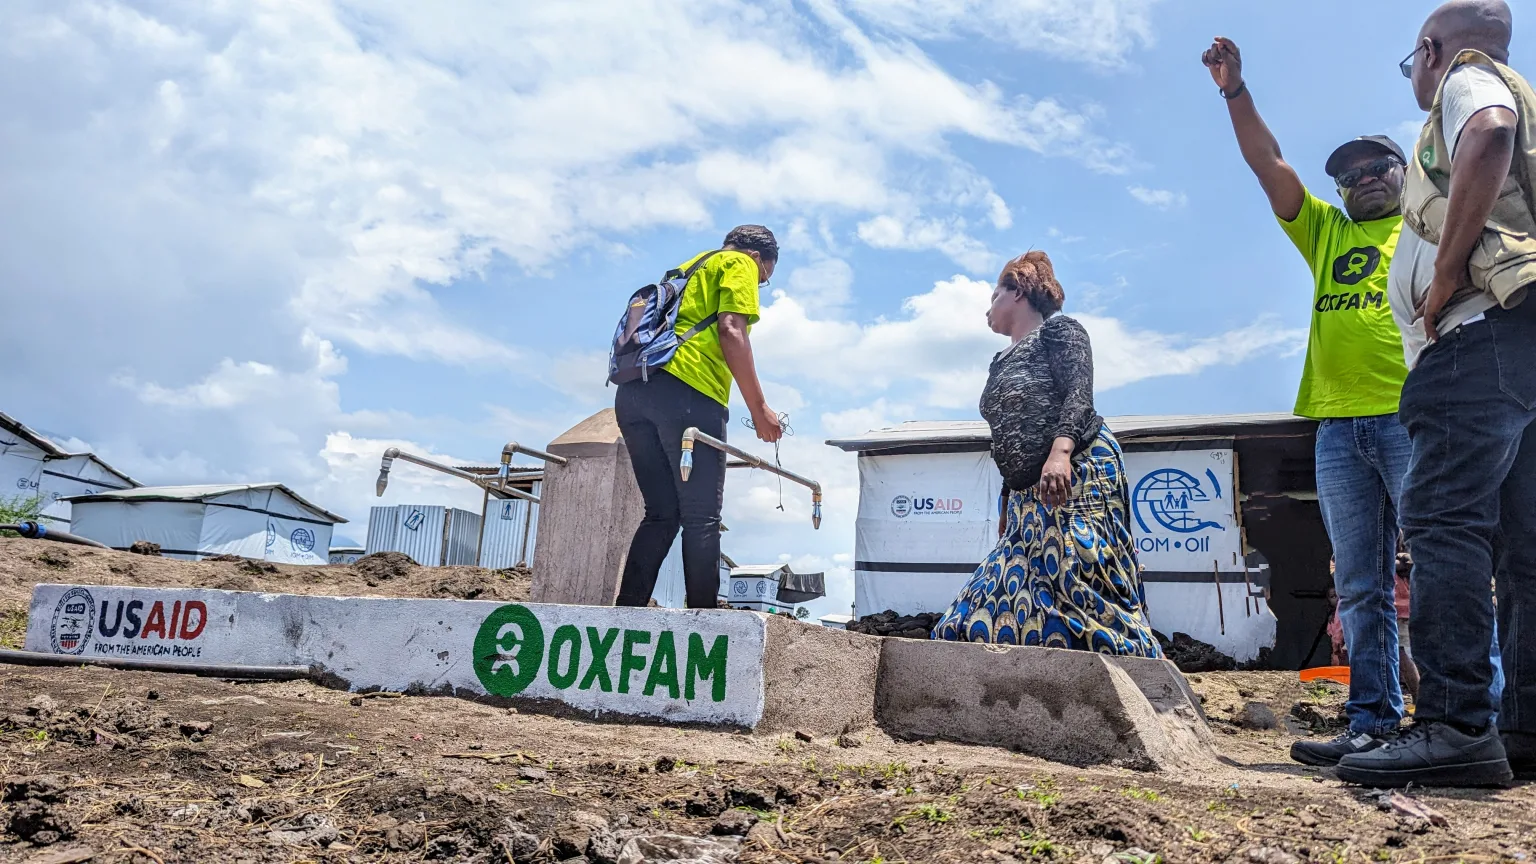 Travailleuse d'OXFAM distribuant de l'eau dans un camp de réfugiés, aidant à fournir des besoins vitaux.